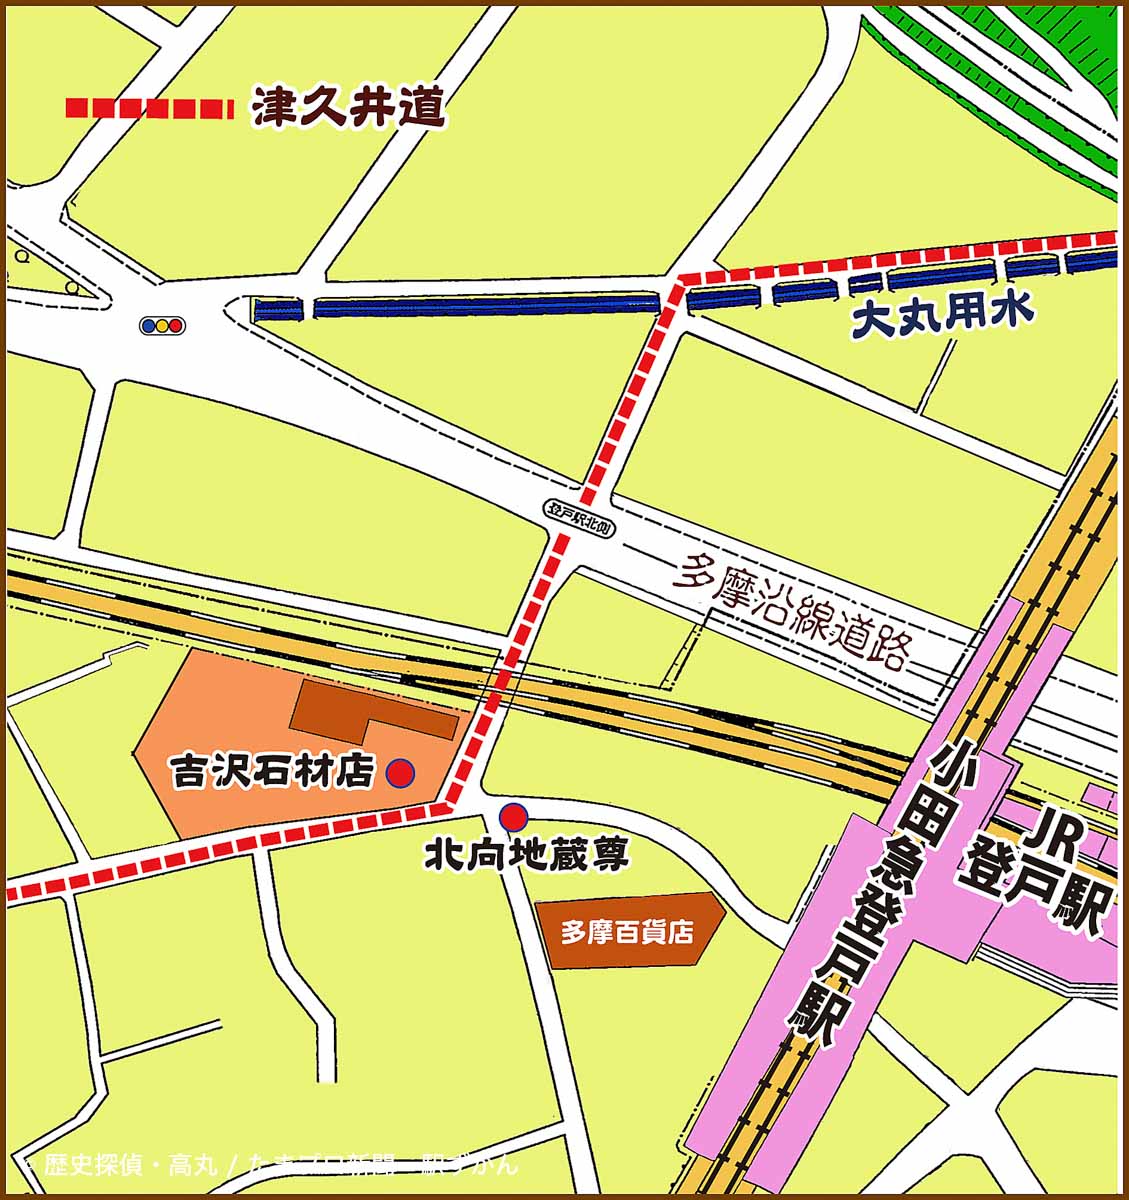 登戸駅周辺のつく移動マップ